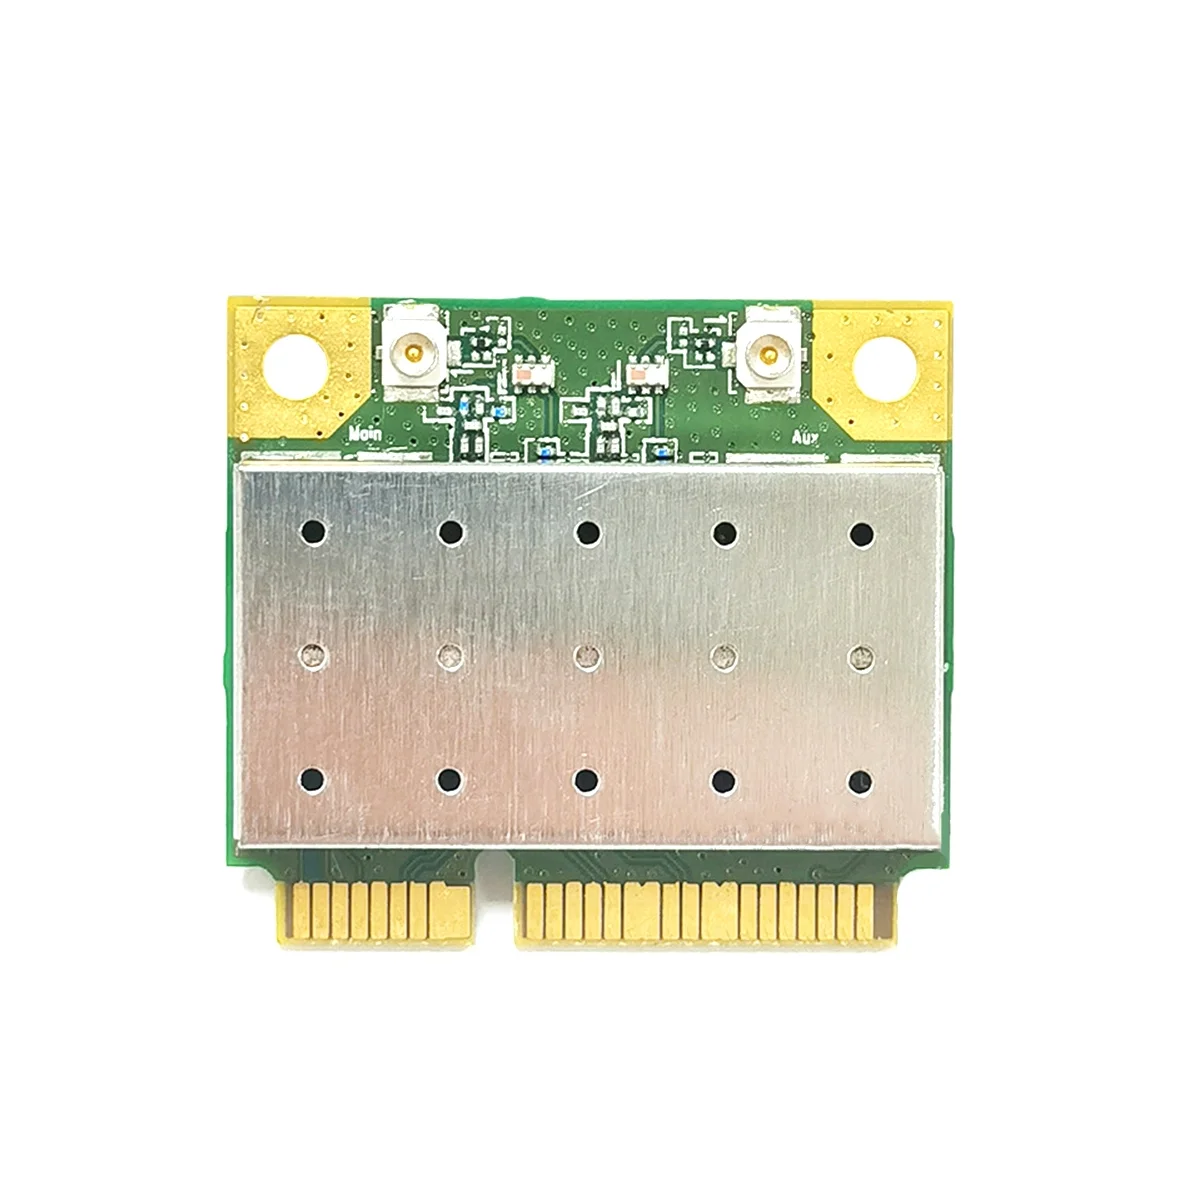 MT7612EN 2.4 G 5G Dual Band Gigabit מובנה כרטיס רשת אלחוטי MINI PCIE WIFI מודול כרטיס רשת עבור לינוקס אנדרואיד